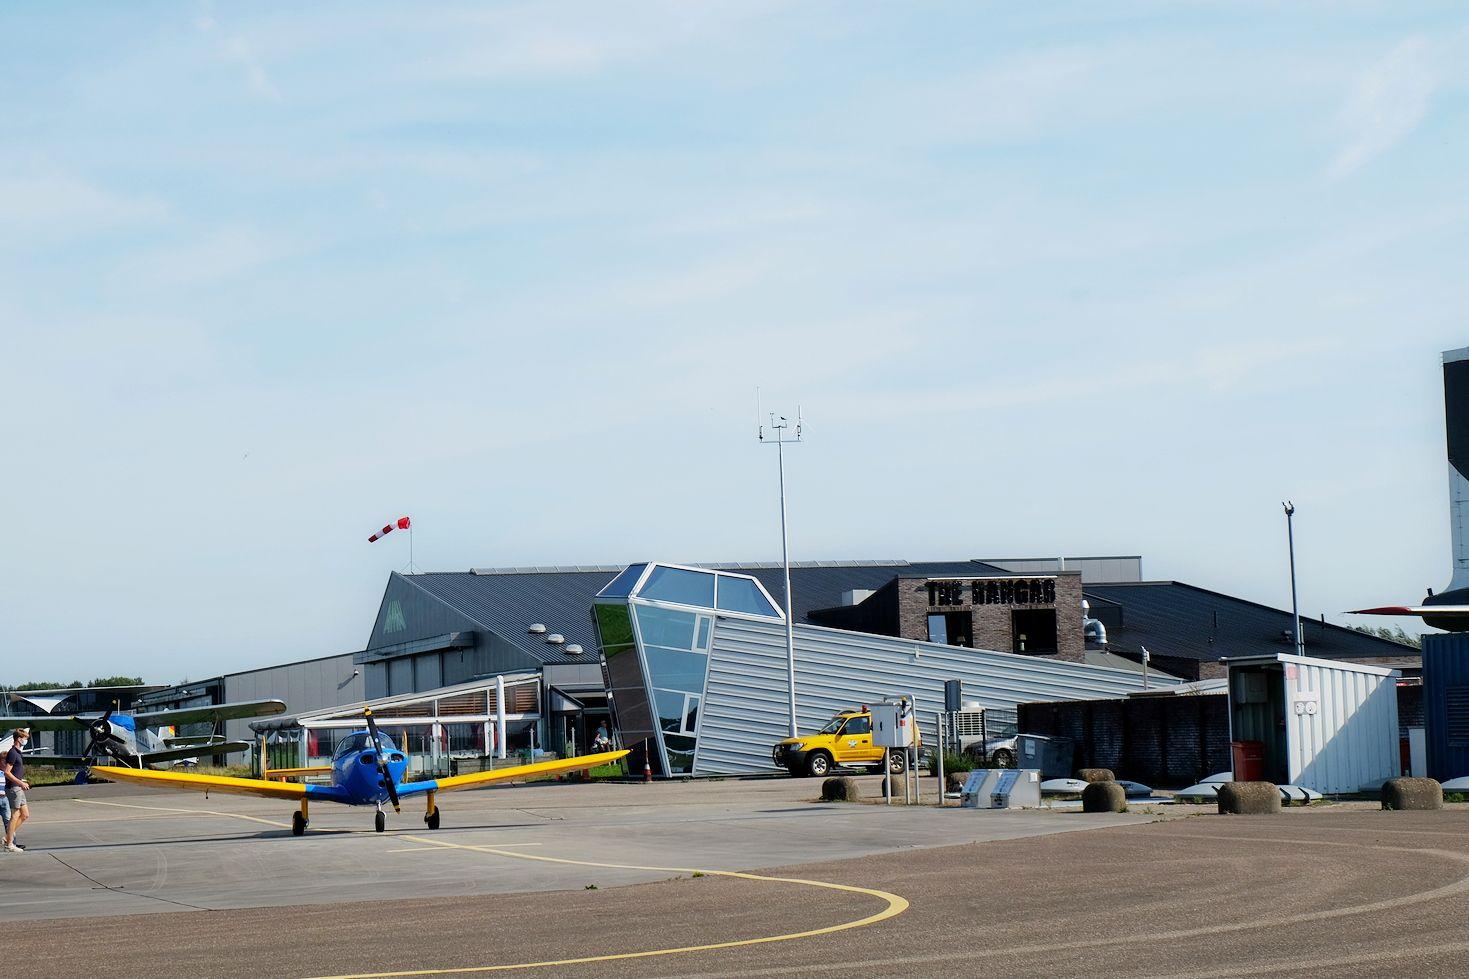 Luchthavenbesluit Teuge naar Provinciale Staten voor besluit